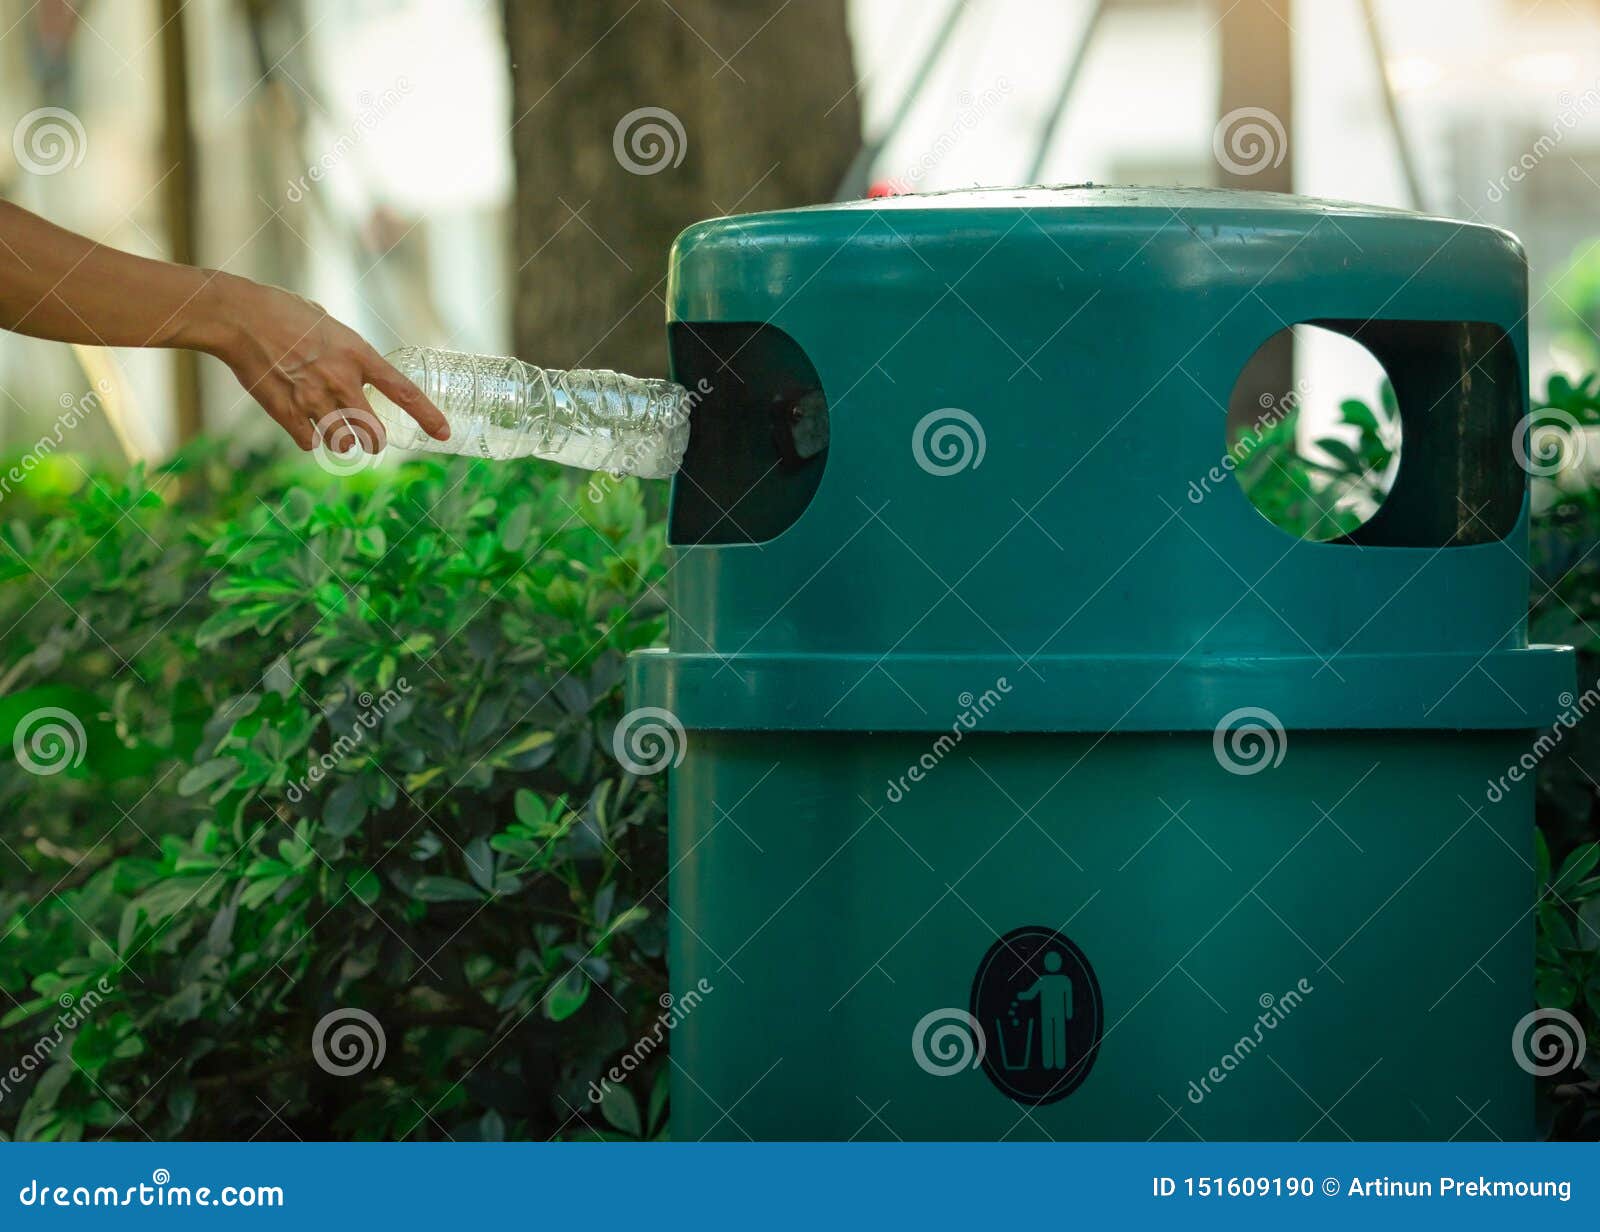 people hand throwing empty water bottle in recycle bin at park. green plastic recycle bin. man discard bottle in trash bin. waste